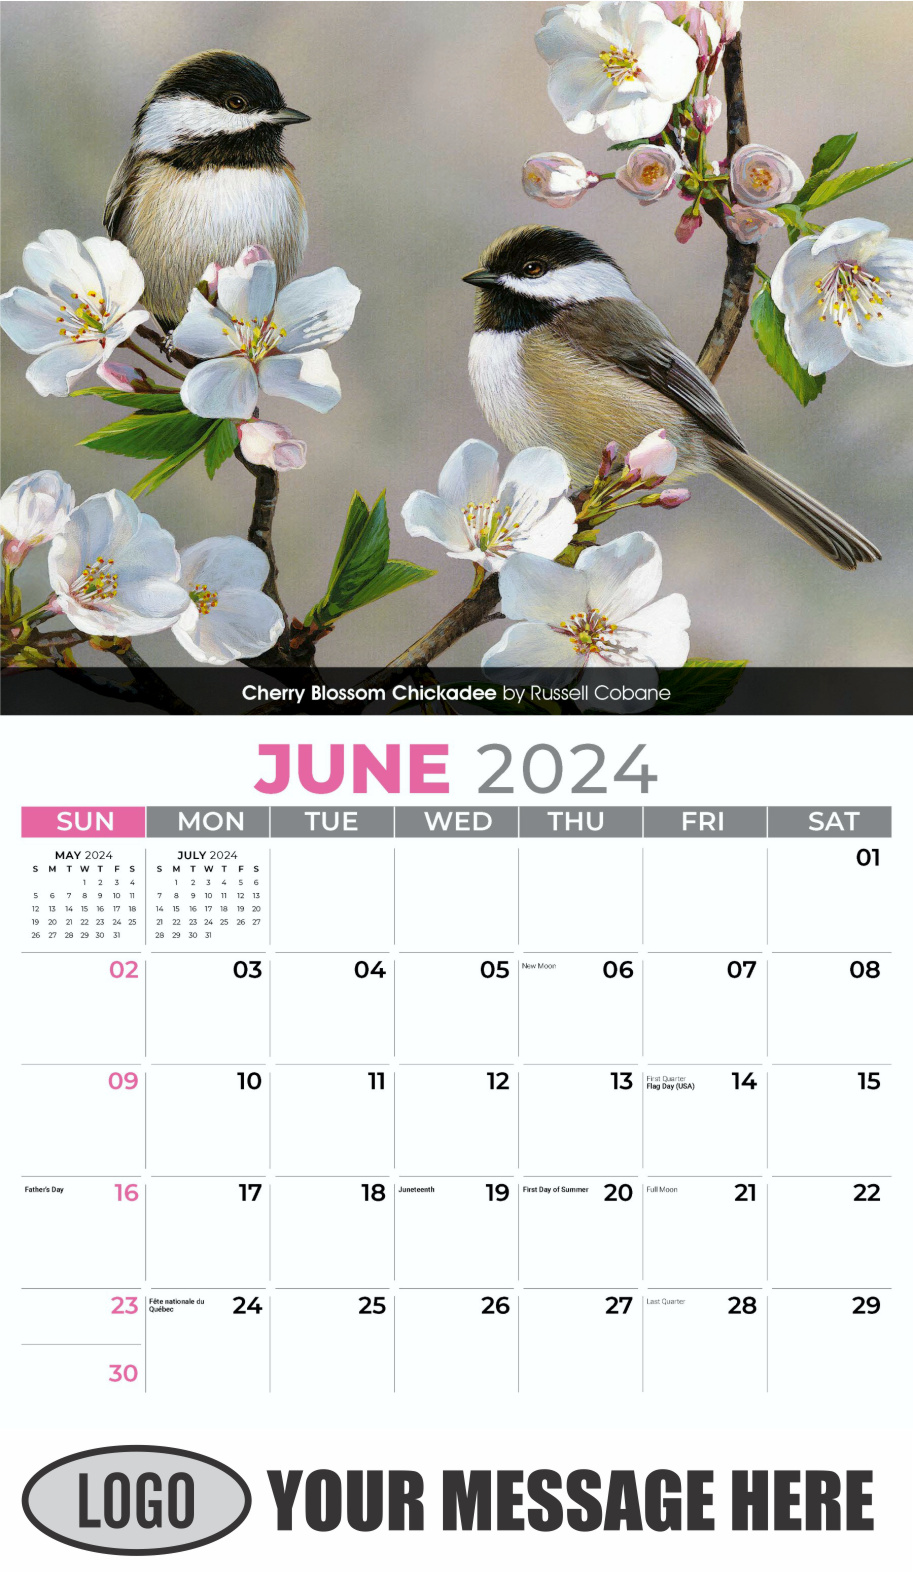 Garden Birds 2024 Business Promotional Calendar - June